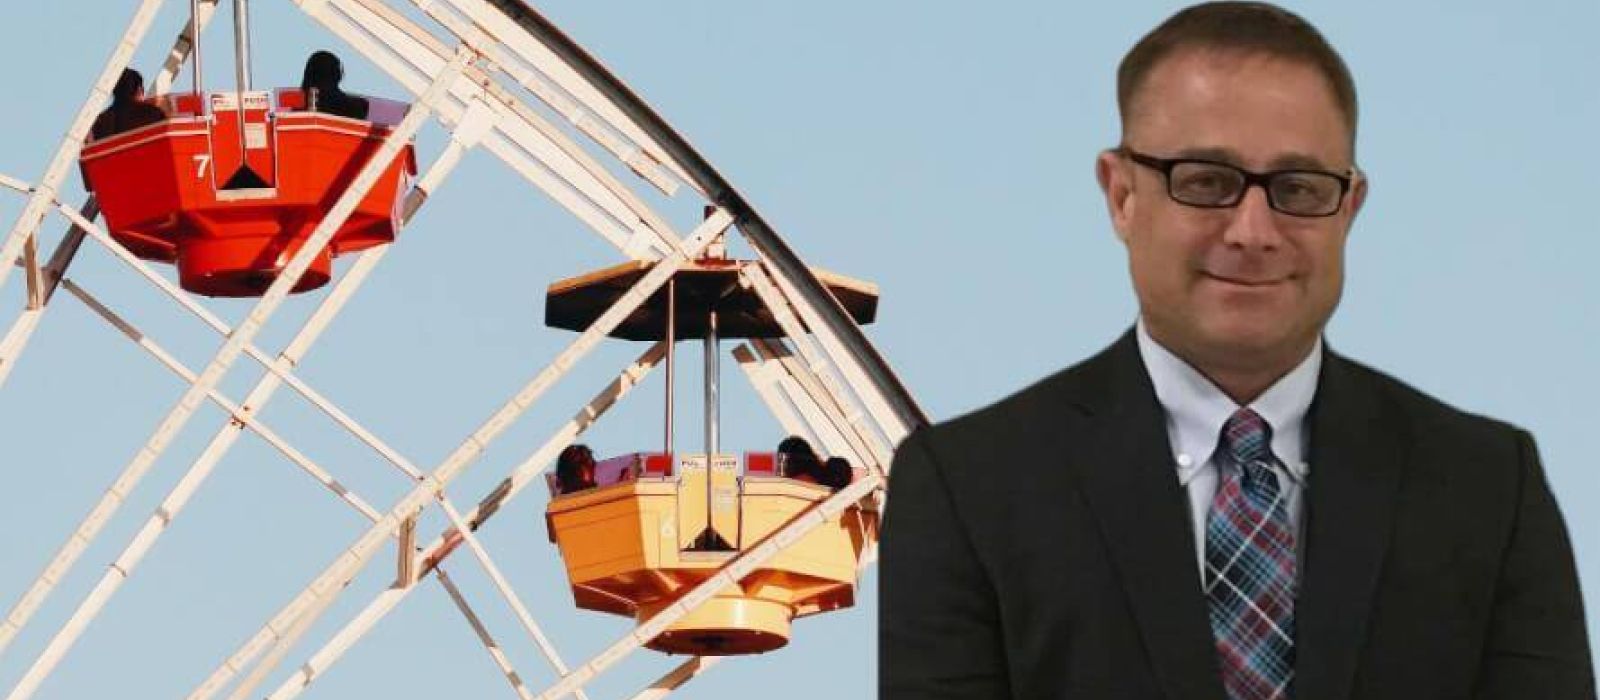 Los Angeles Amusement Park Case Accident Attorneys